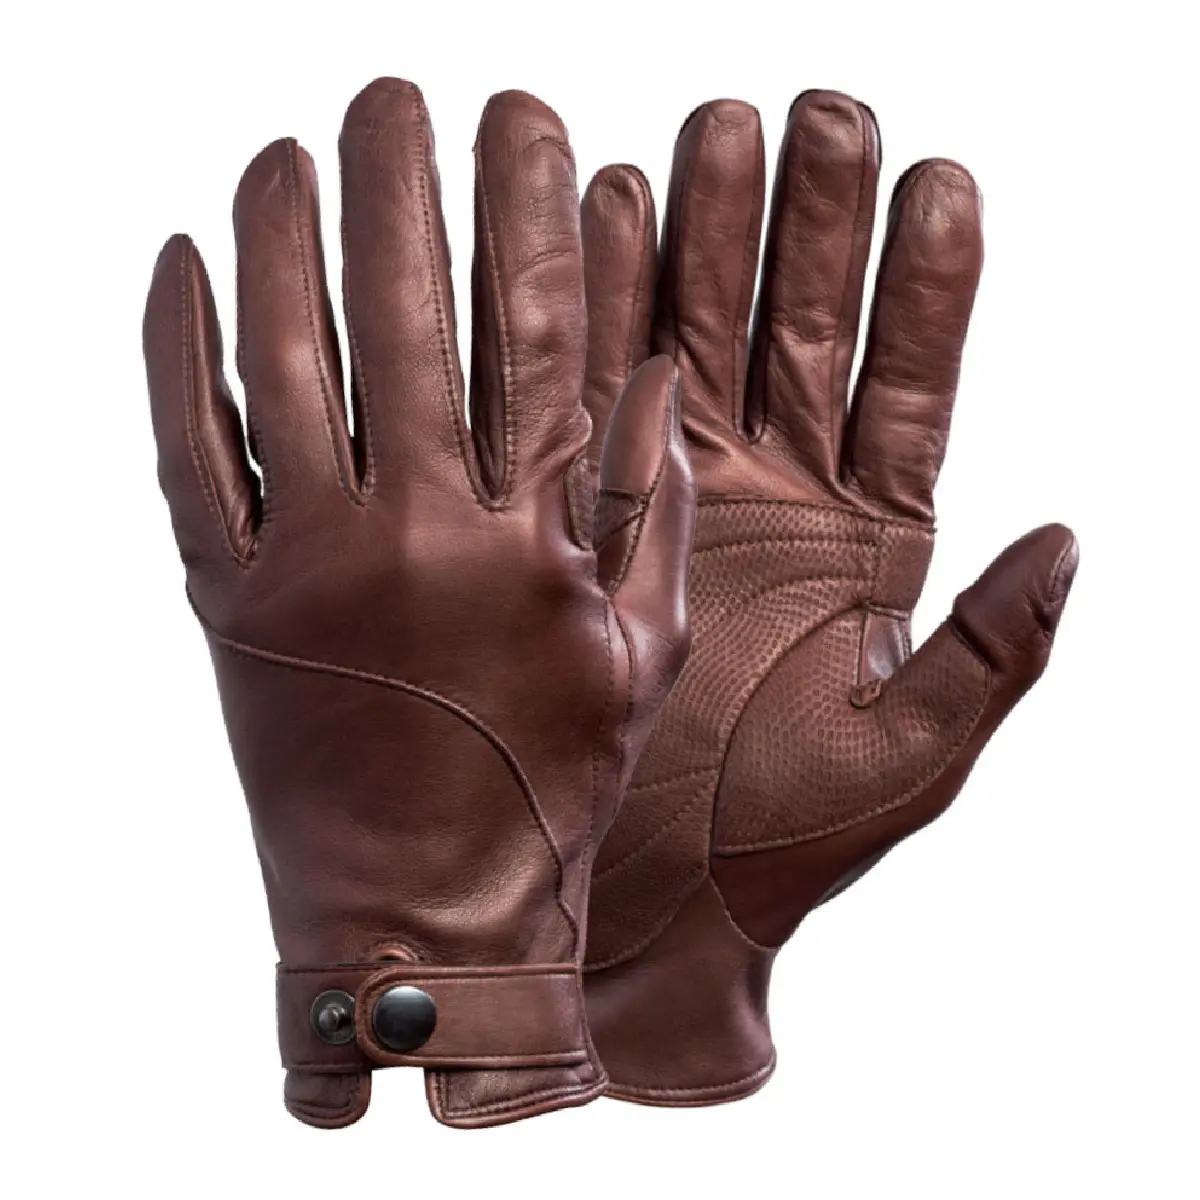 Оригинальные высококачественные теплые кожаные перчатки для зимы, новые модные мужские кожаные перчатки из оленьей кожи